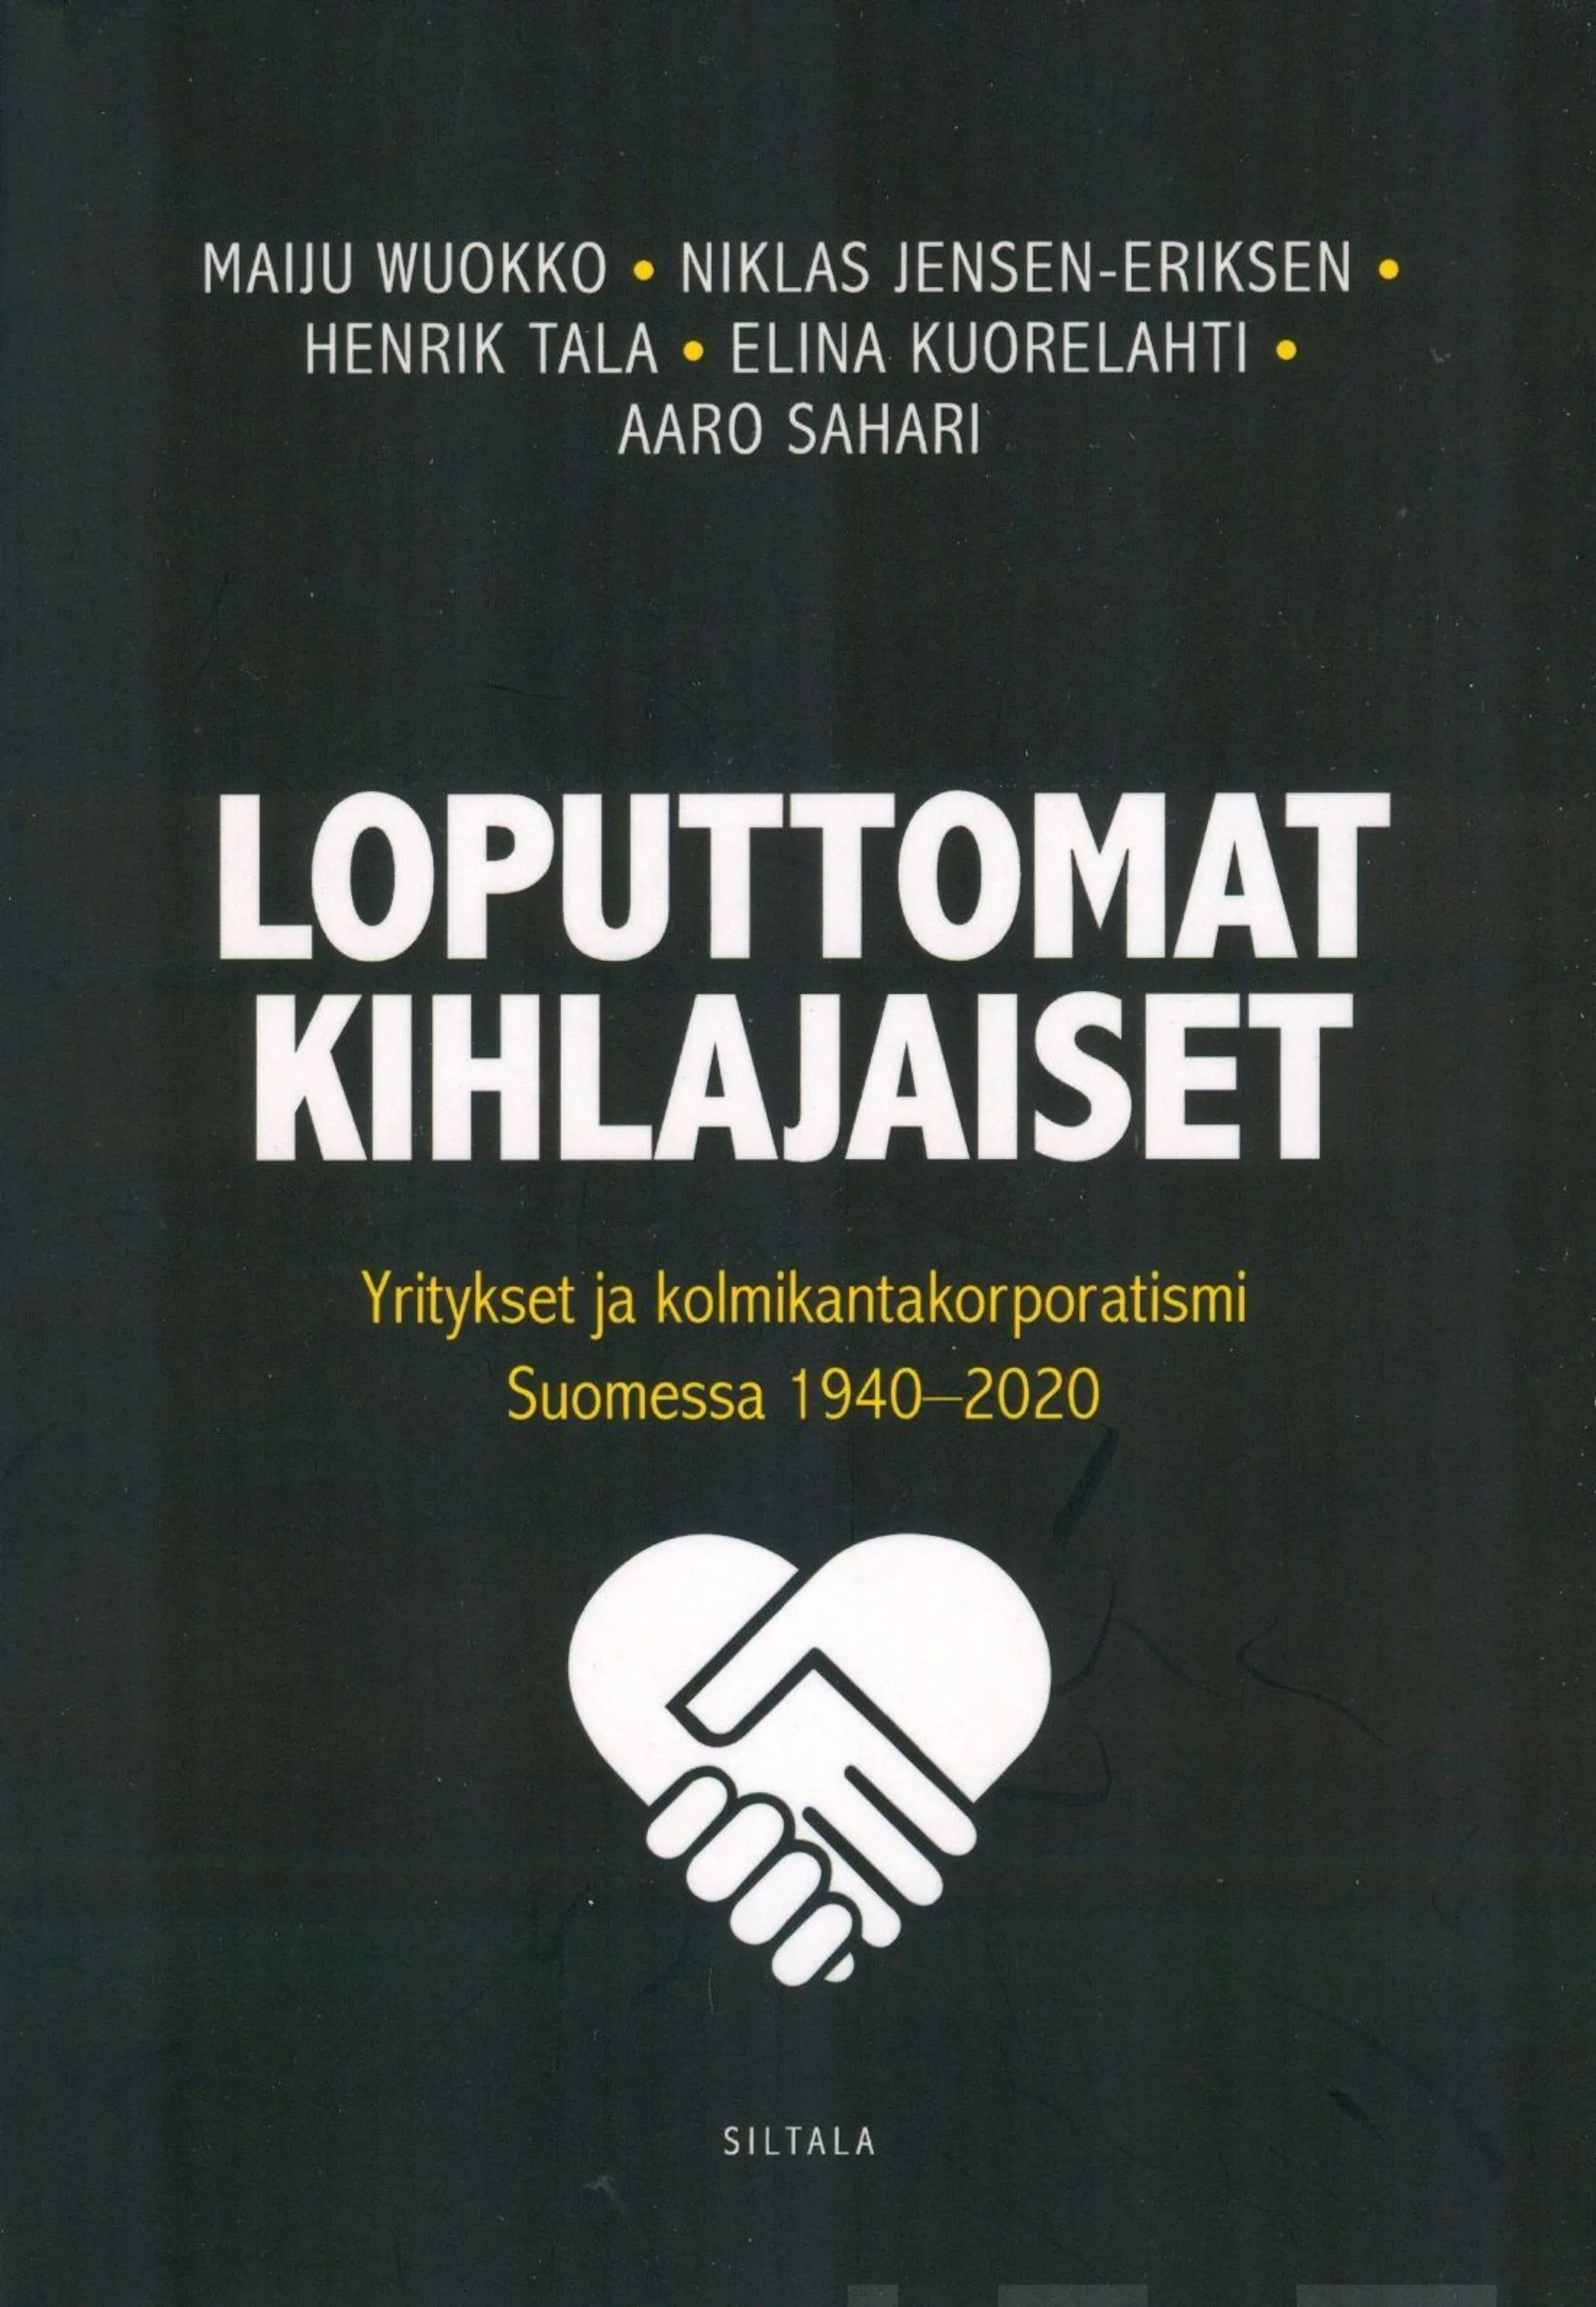 Wuokko, Loputtomat kihlajaiset - Yritykset ja kolmikantakorporatismi Suomessa 1940-2020